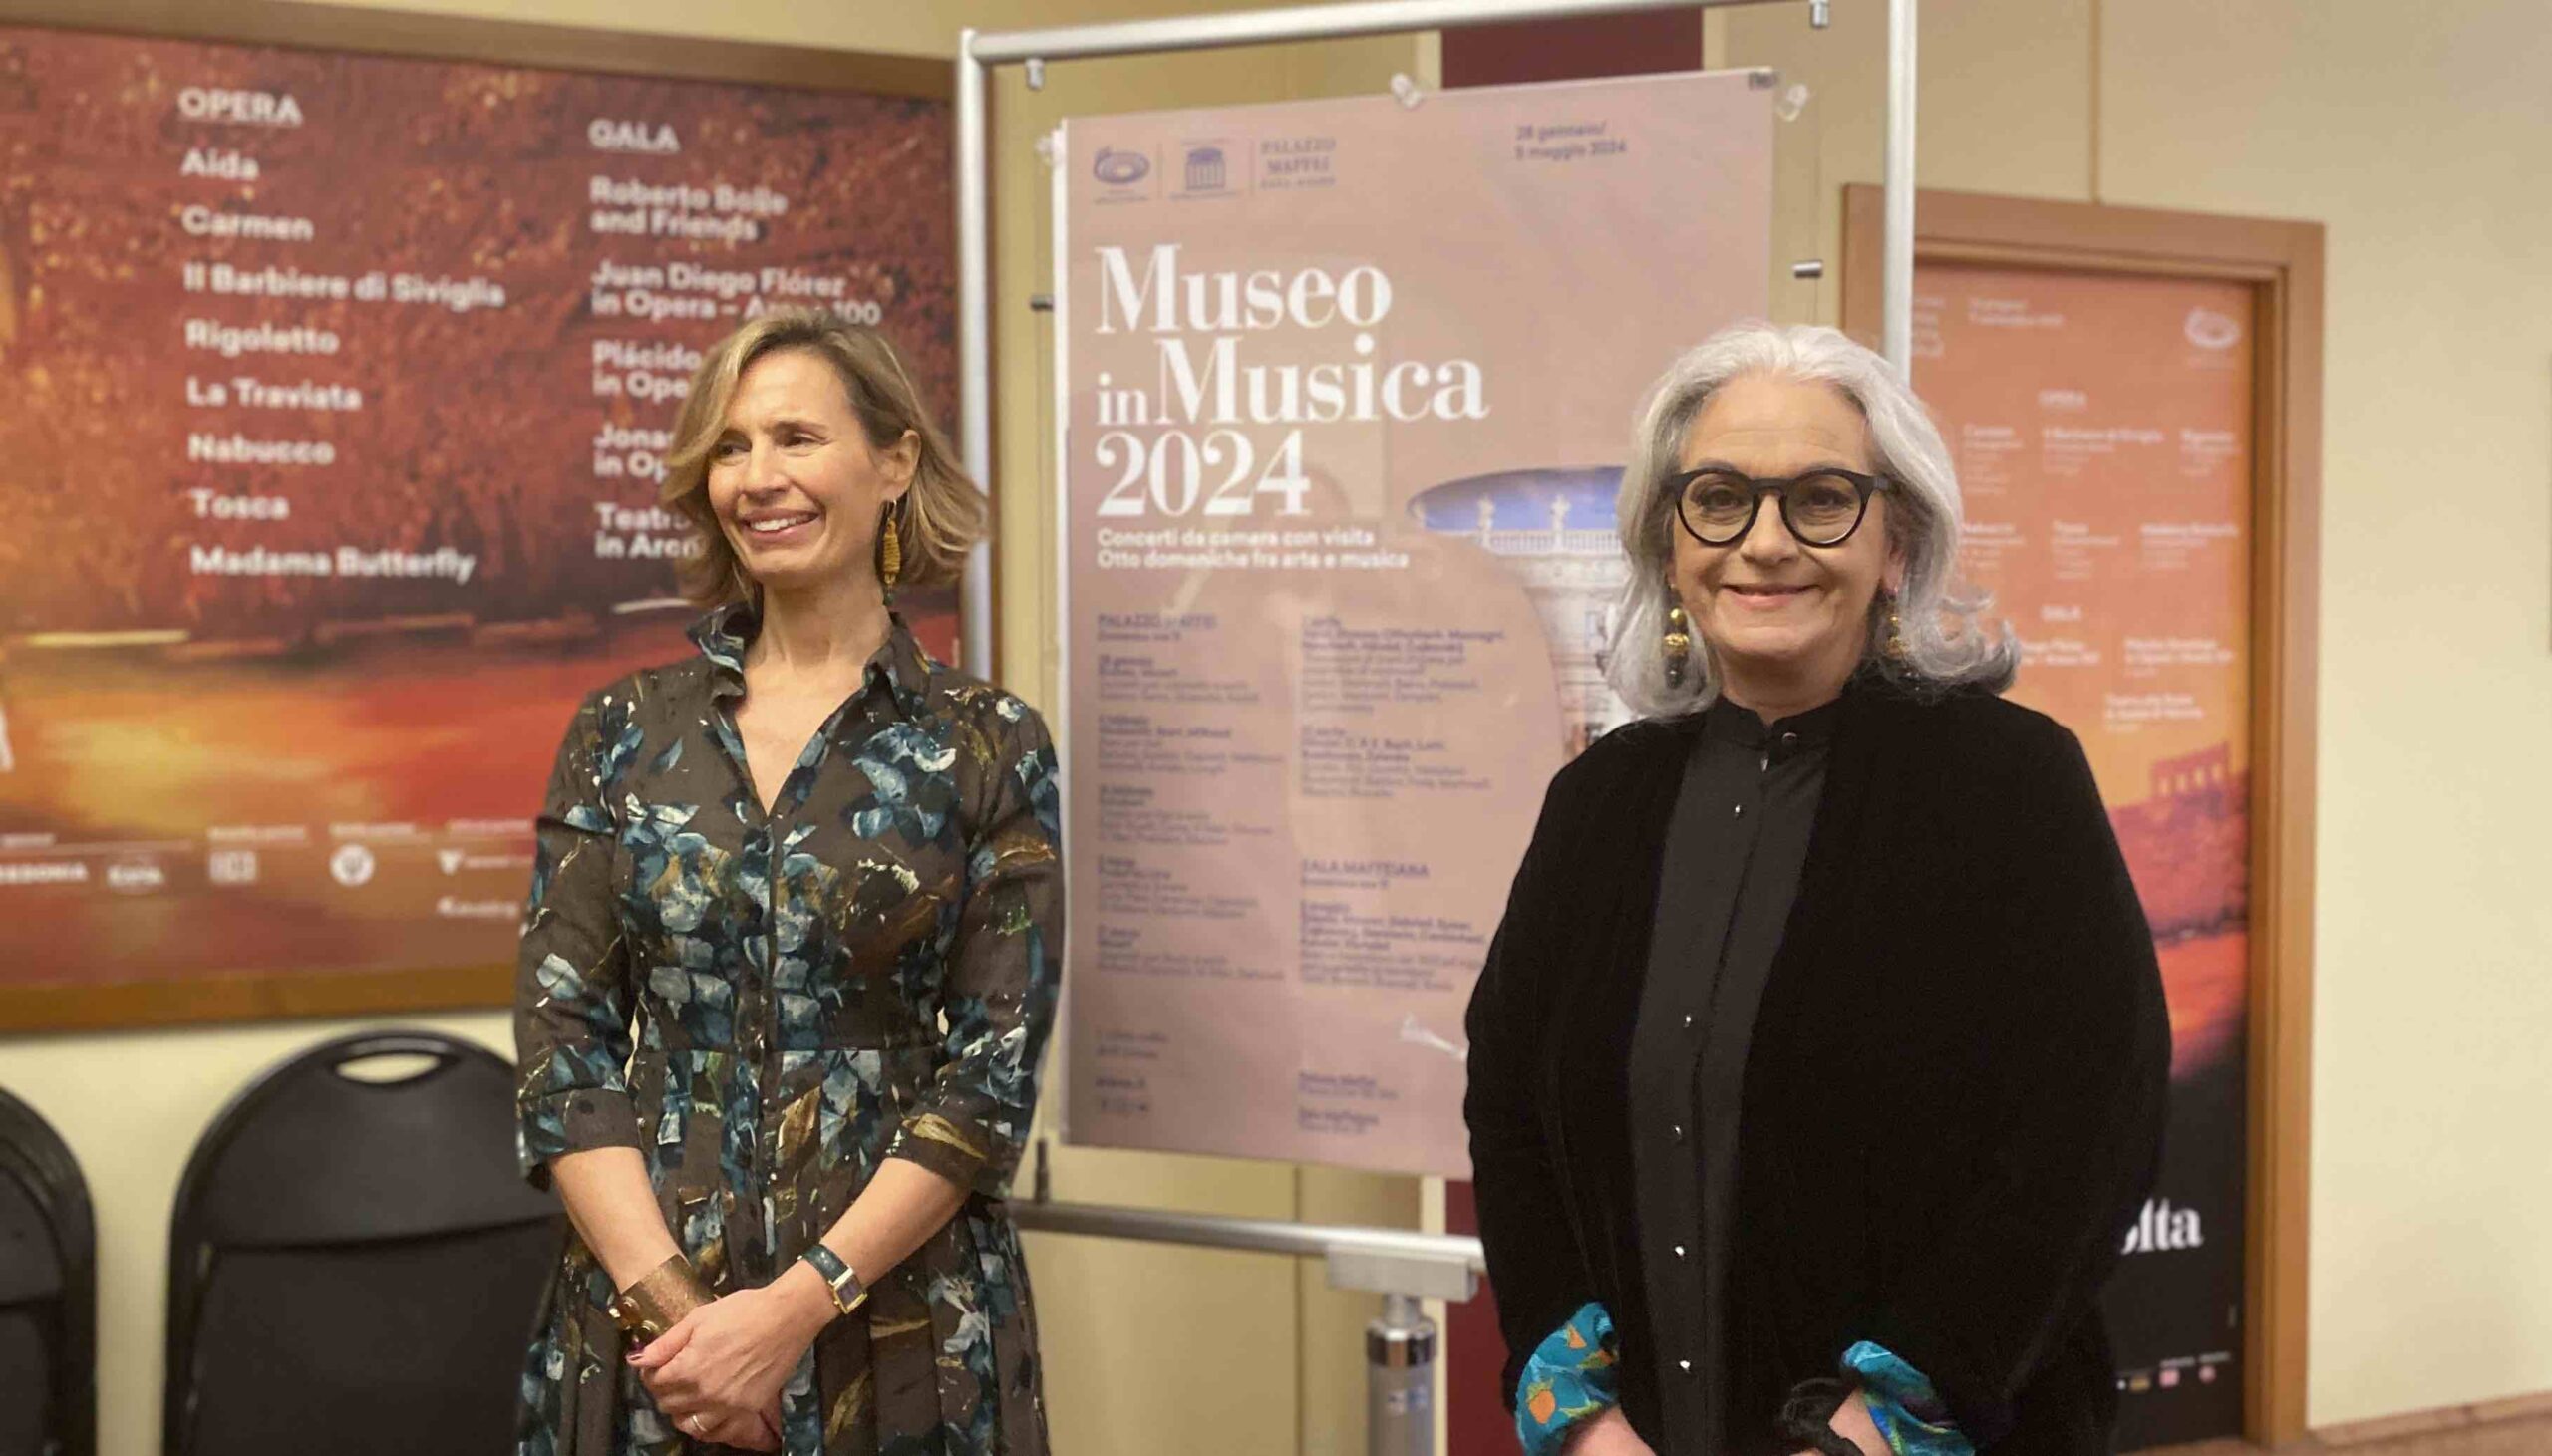 Fondazione Arena e Palazzo Maffei presentano “Museo in Musica 2024”. Quando Arte e Note si fondono